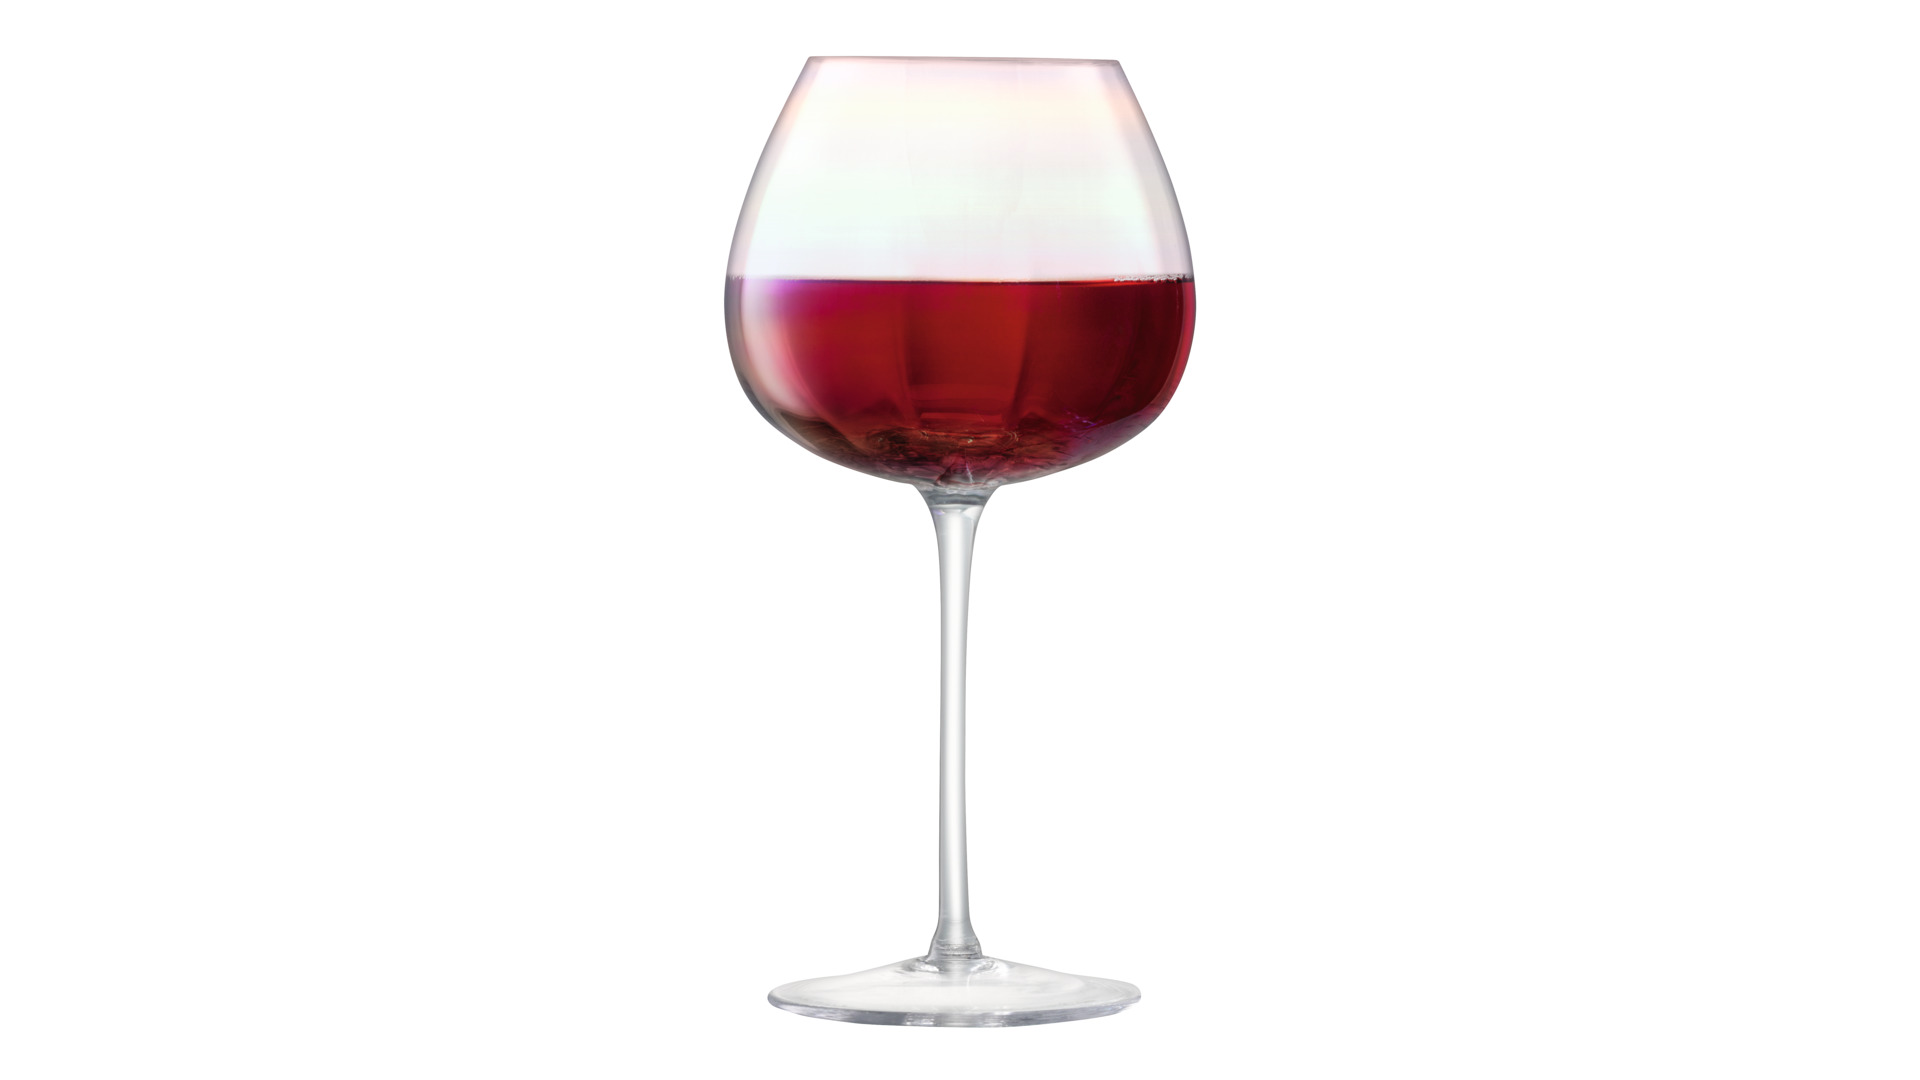 Набор бокалов для красного вина LSA International Pearl 460 мл, 4 шт, стекло